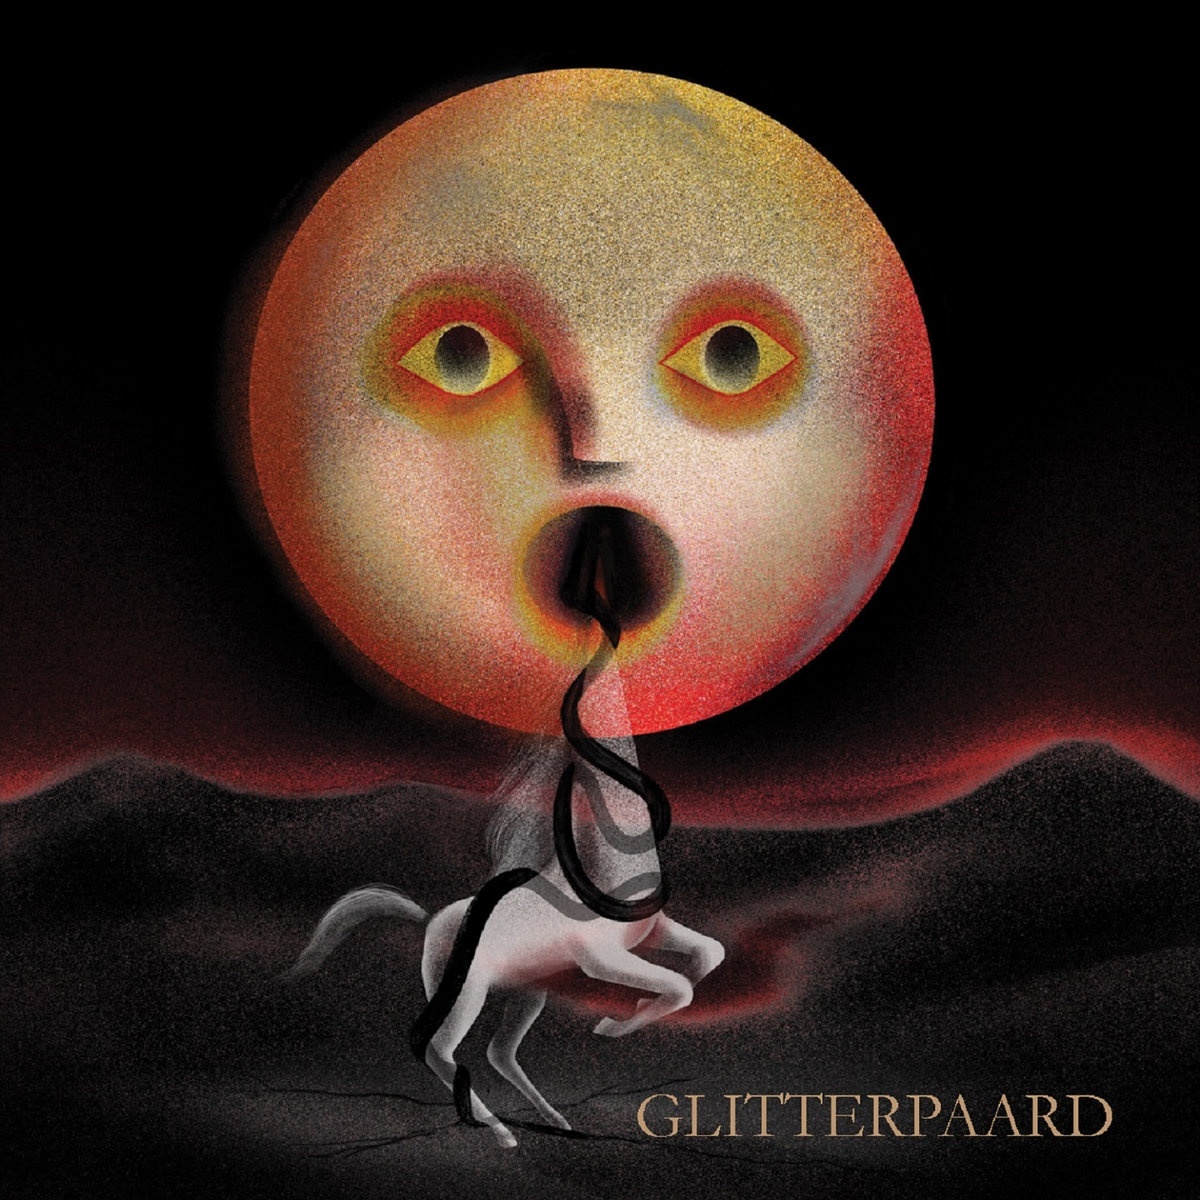 Glitterpaard - Glitterpaard vinyl cover